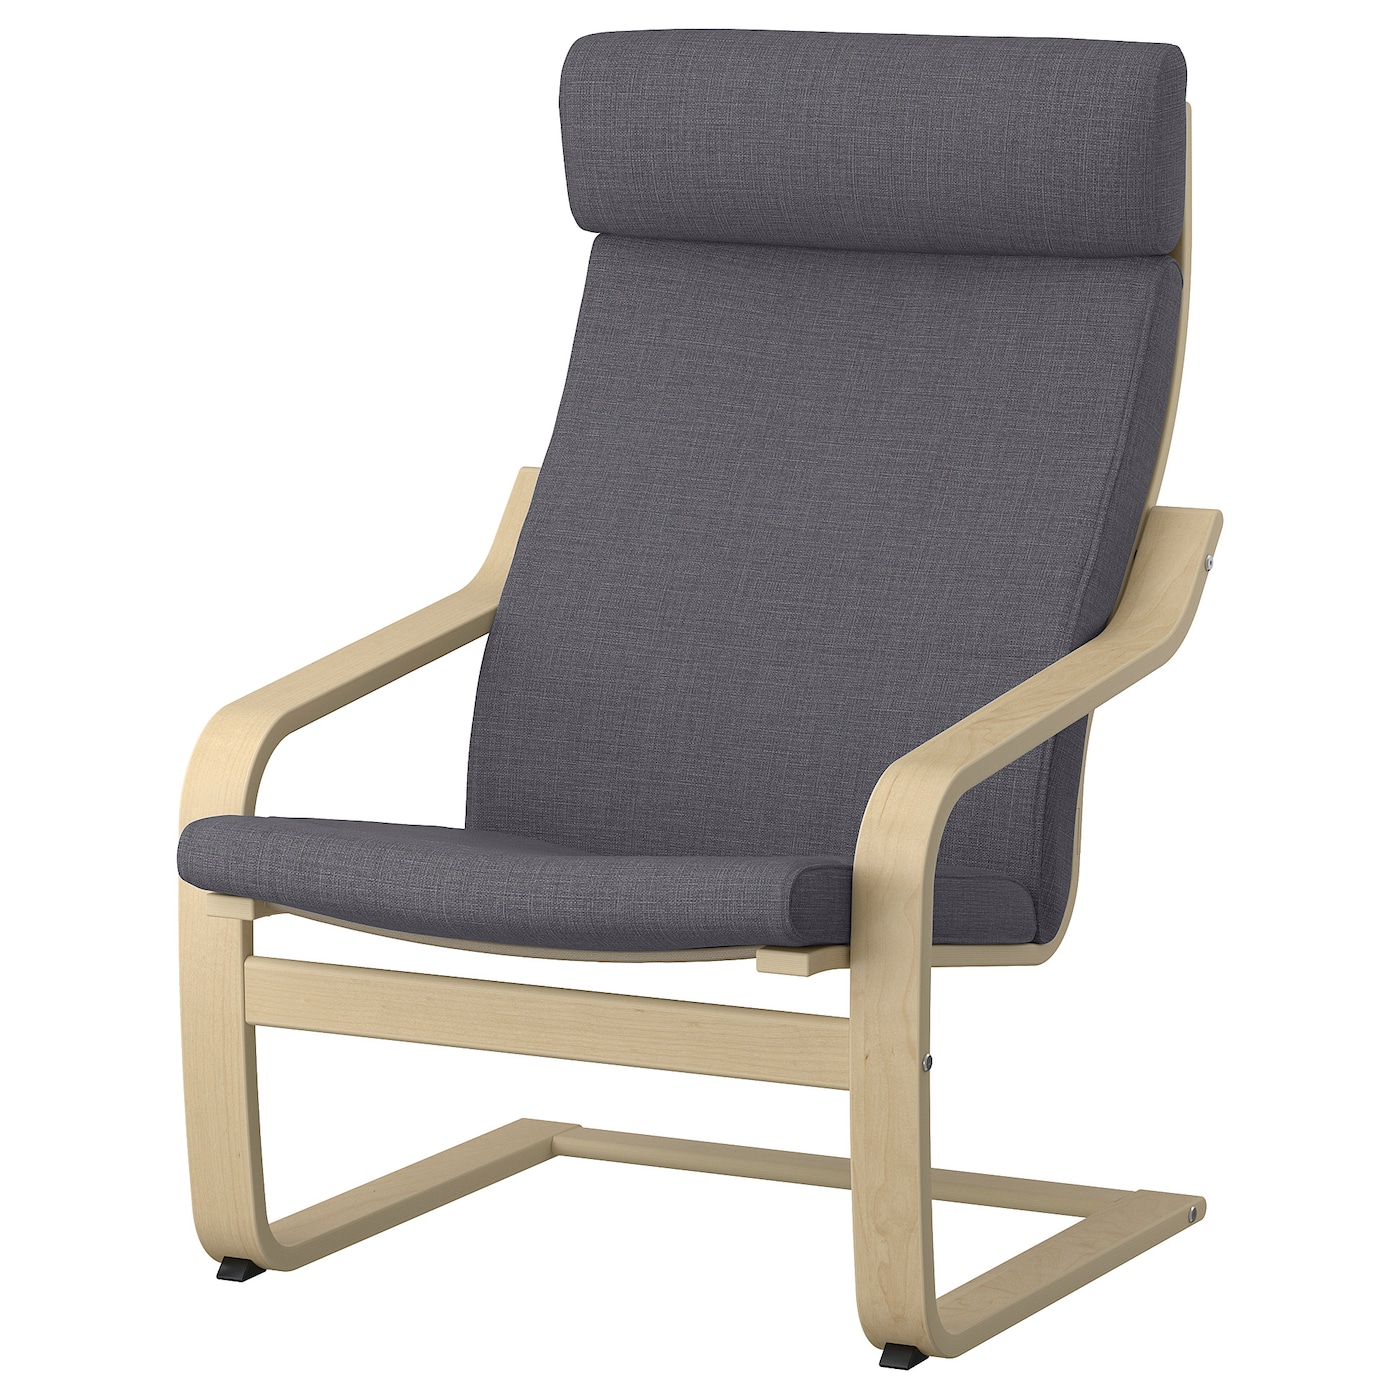 ПОЭНГ Кресло, березовый шпон/Скифтебо темно-серый POÄNG IKEA кресло для геймеров karnox legend tr серый